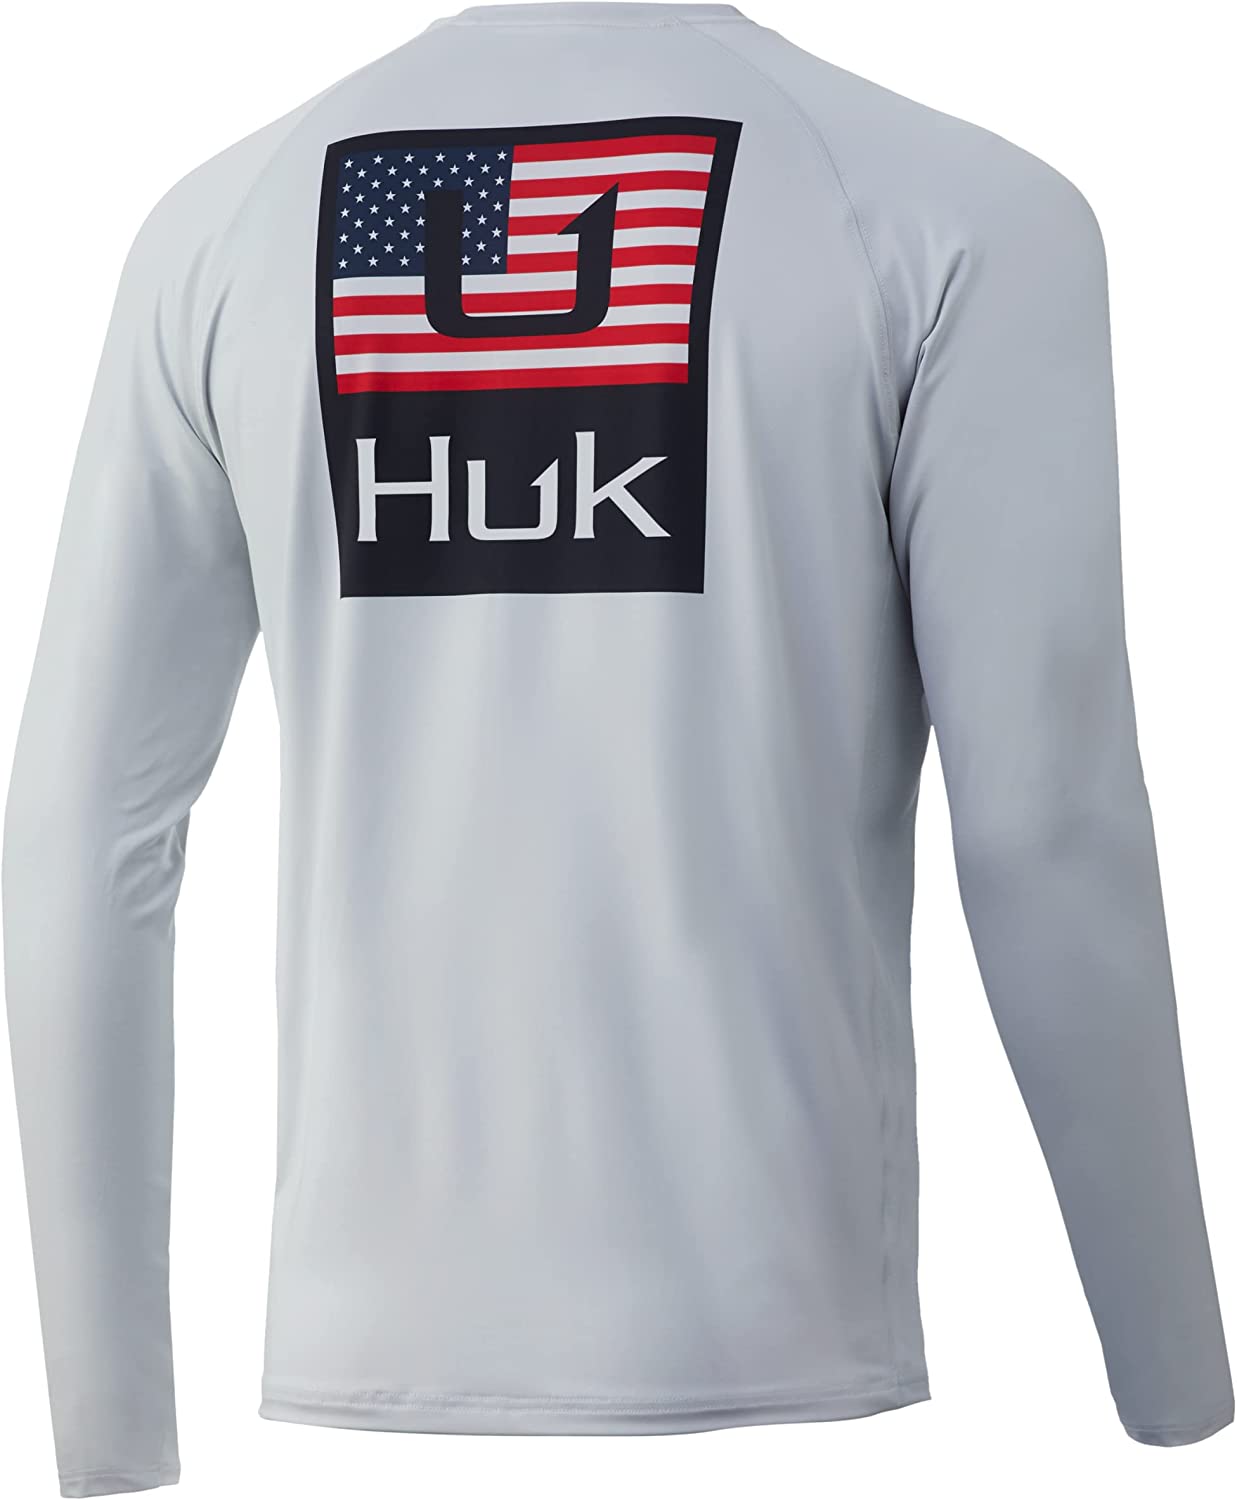 HUK HUK'D up Americana Pursuit Fishing Shirt - Bowtreader